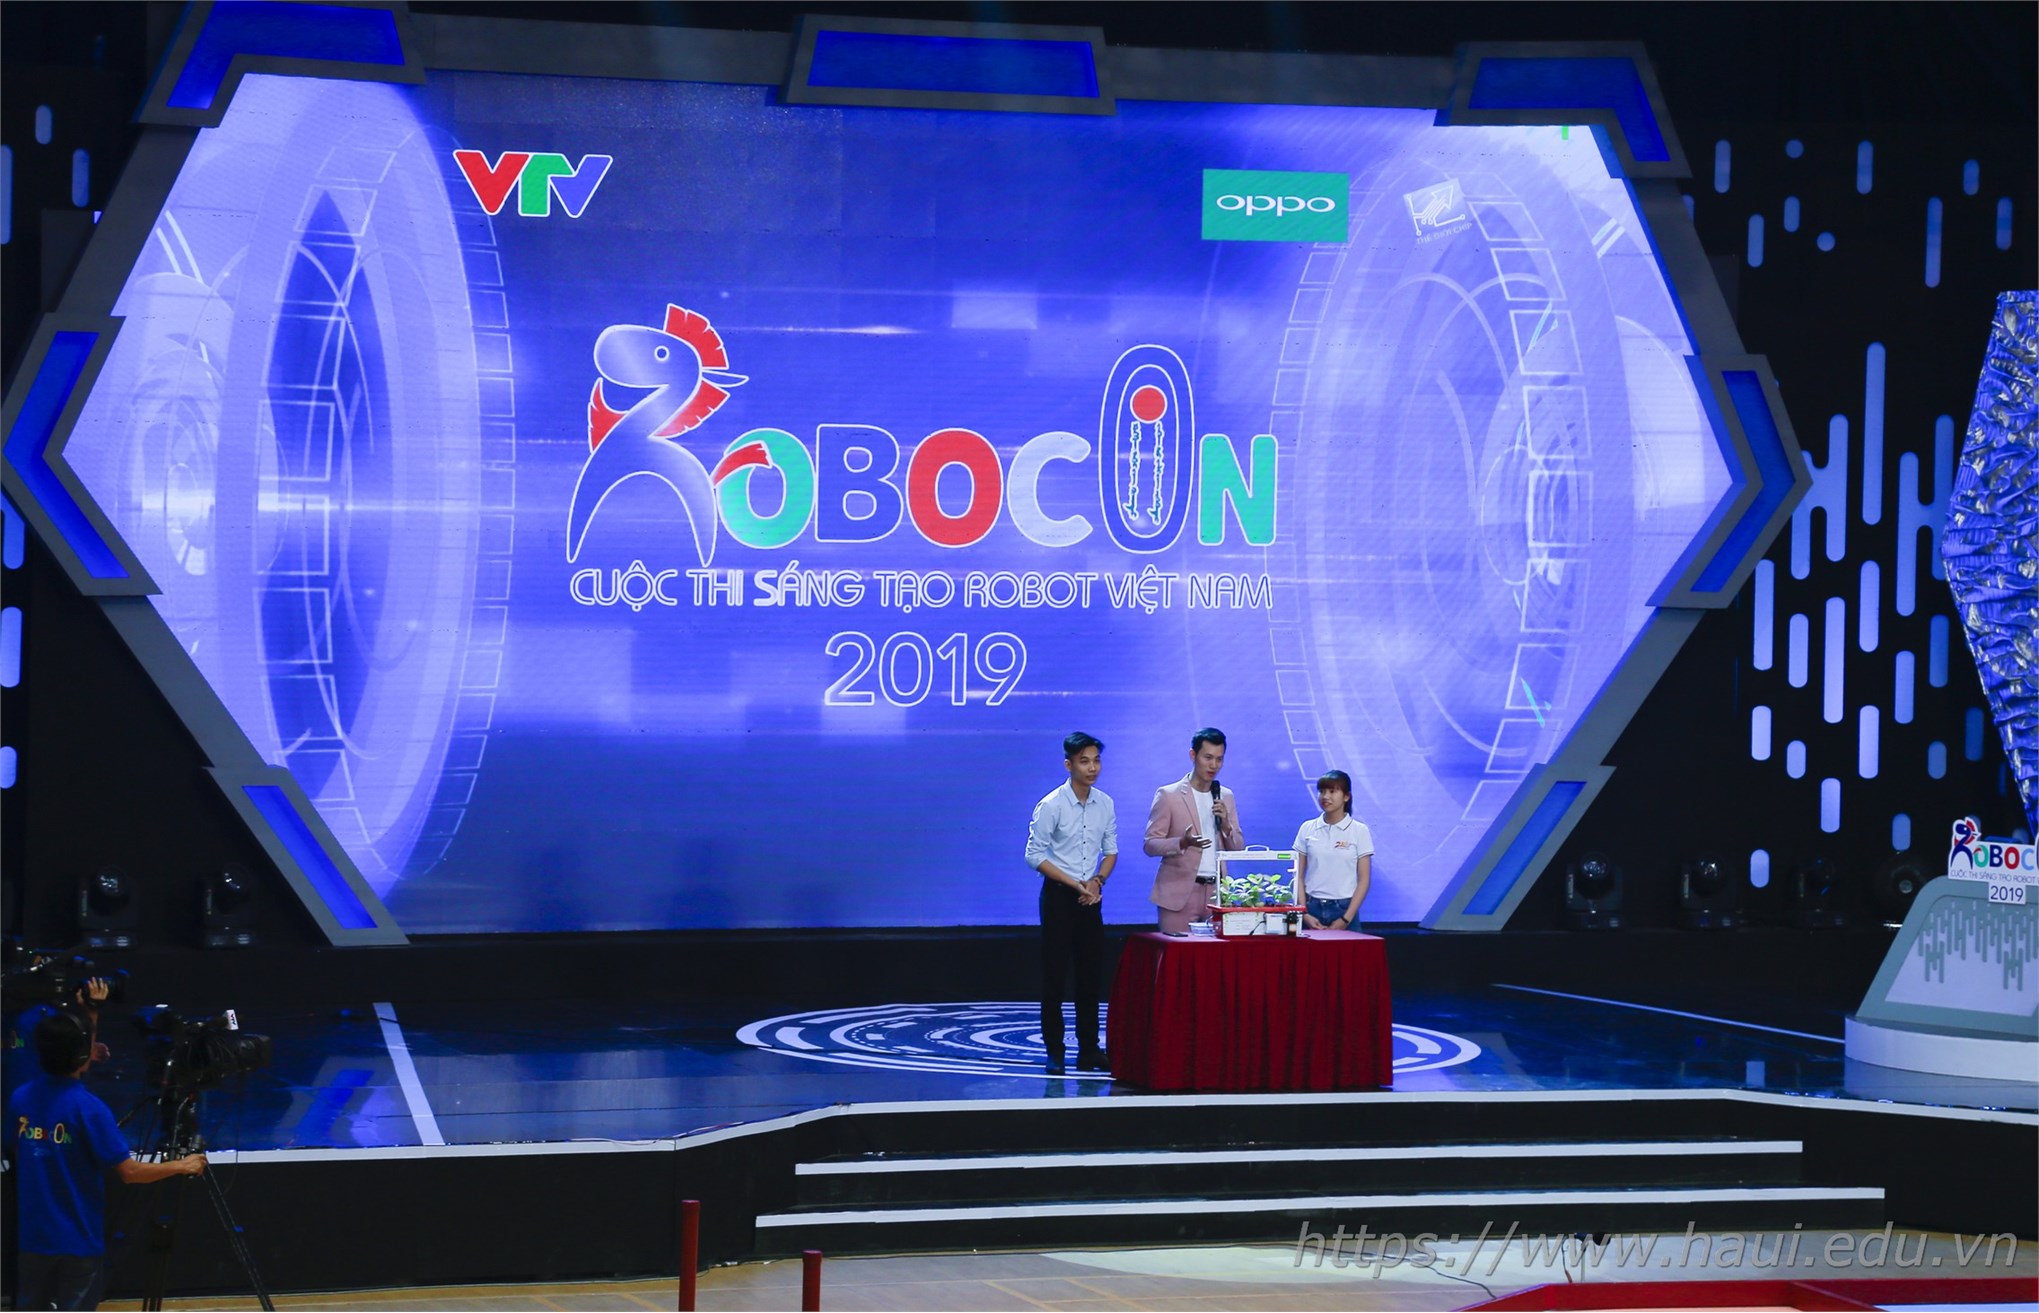 Đại học Công nghiệp Hà Nội đạt giải Ba cuộc thi Robocon Việt Nam 2019